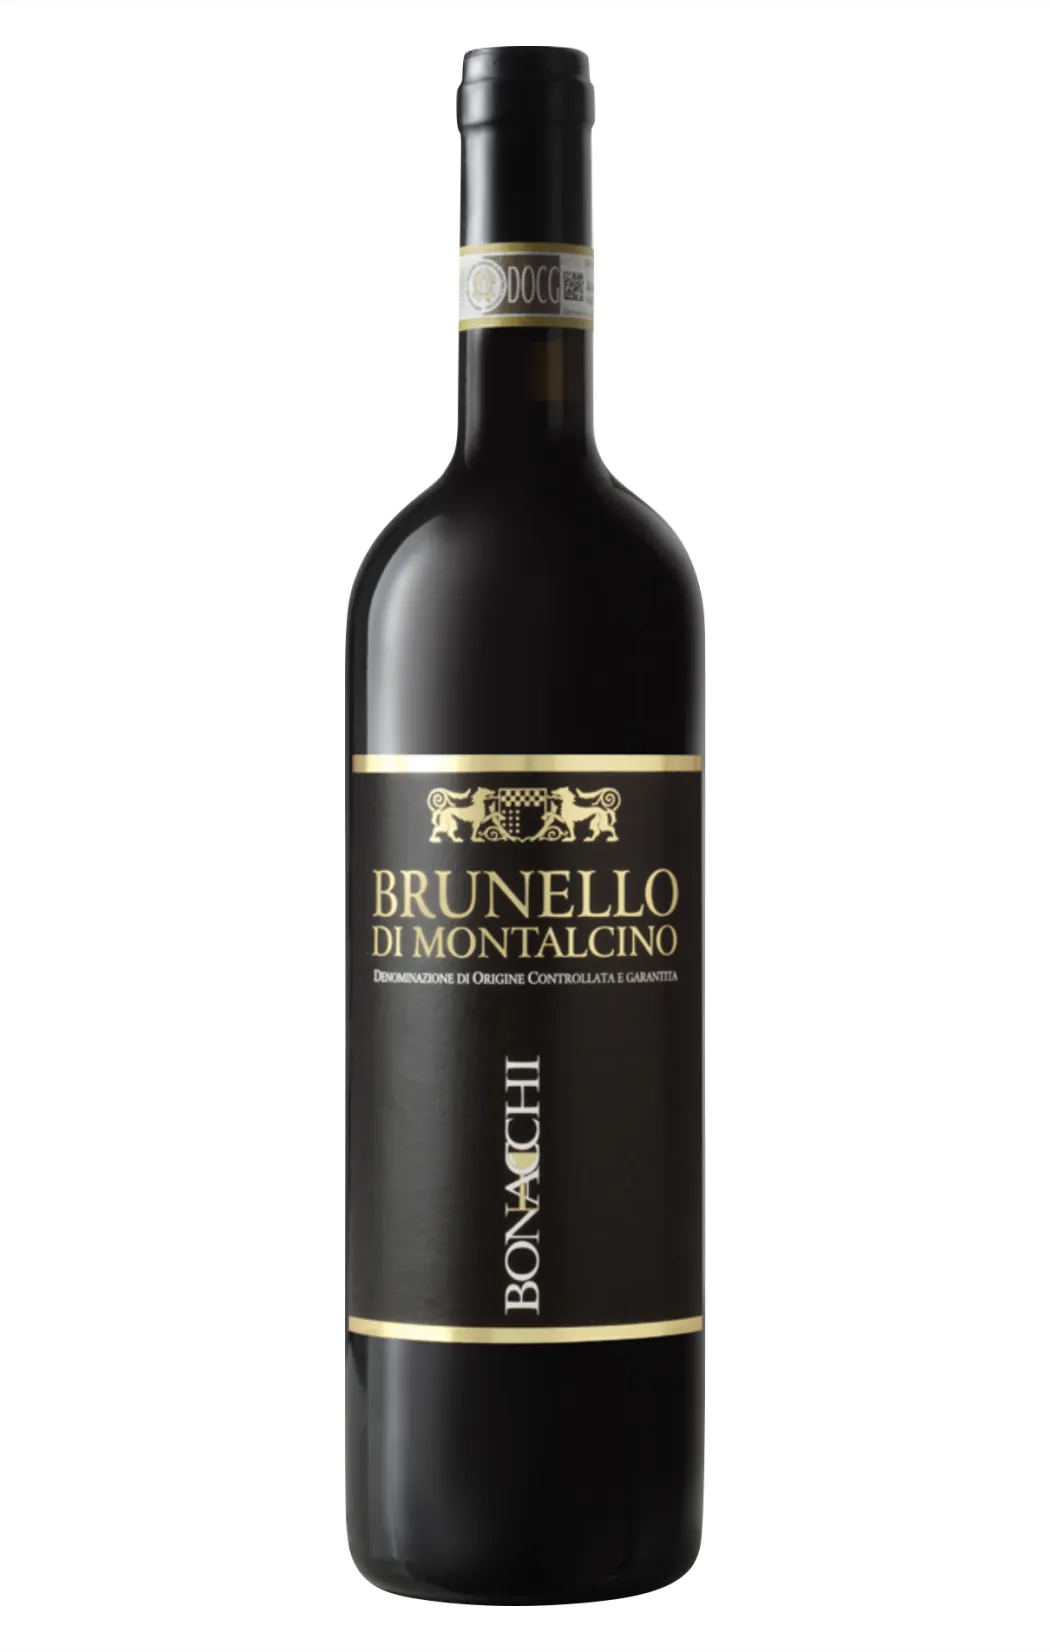 Burnello Di Montalcino Wine